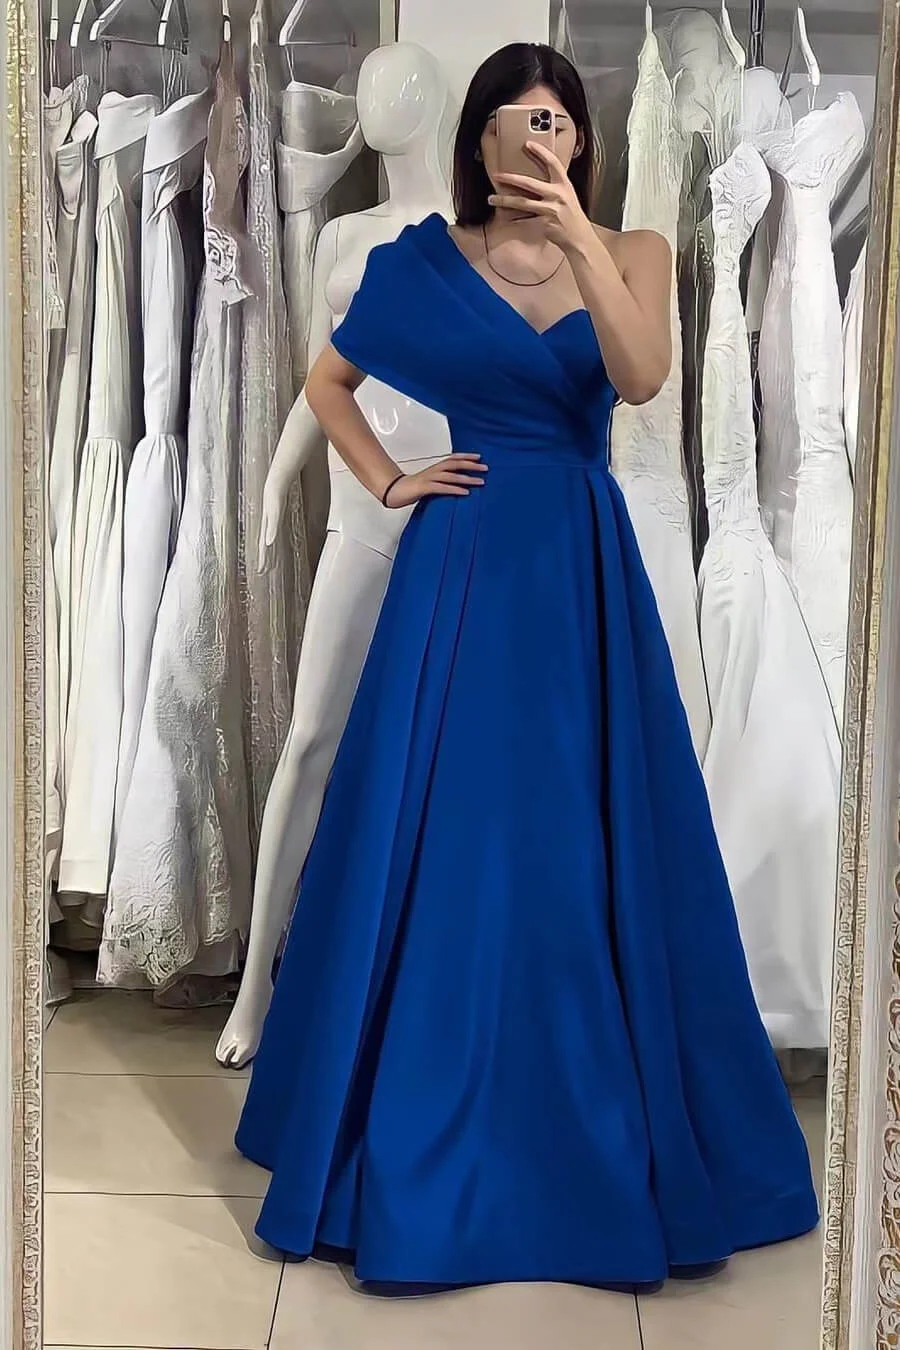 Elegant Royal Blue One Shoulder Sweetheart Evening Dress With Off-The-Shoulder Online ED0150